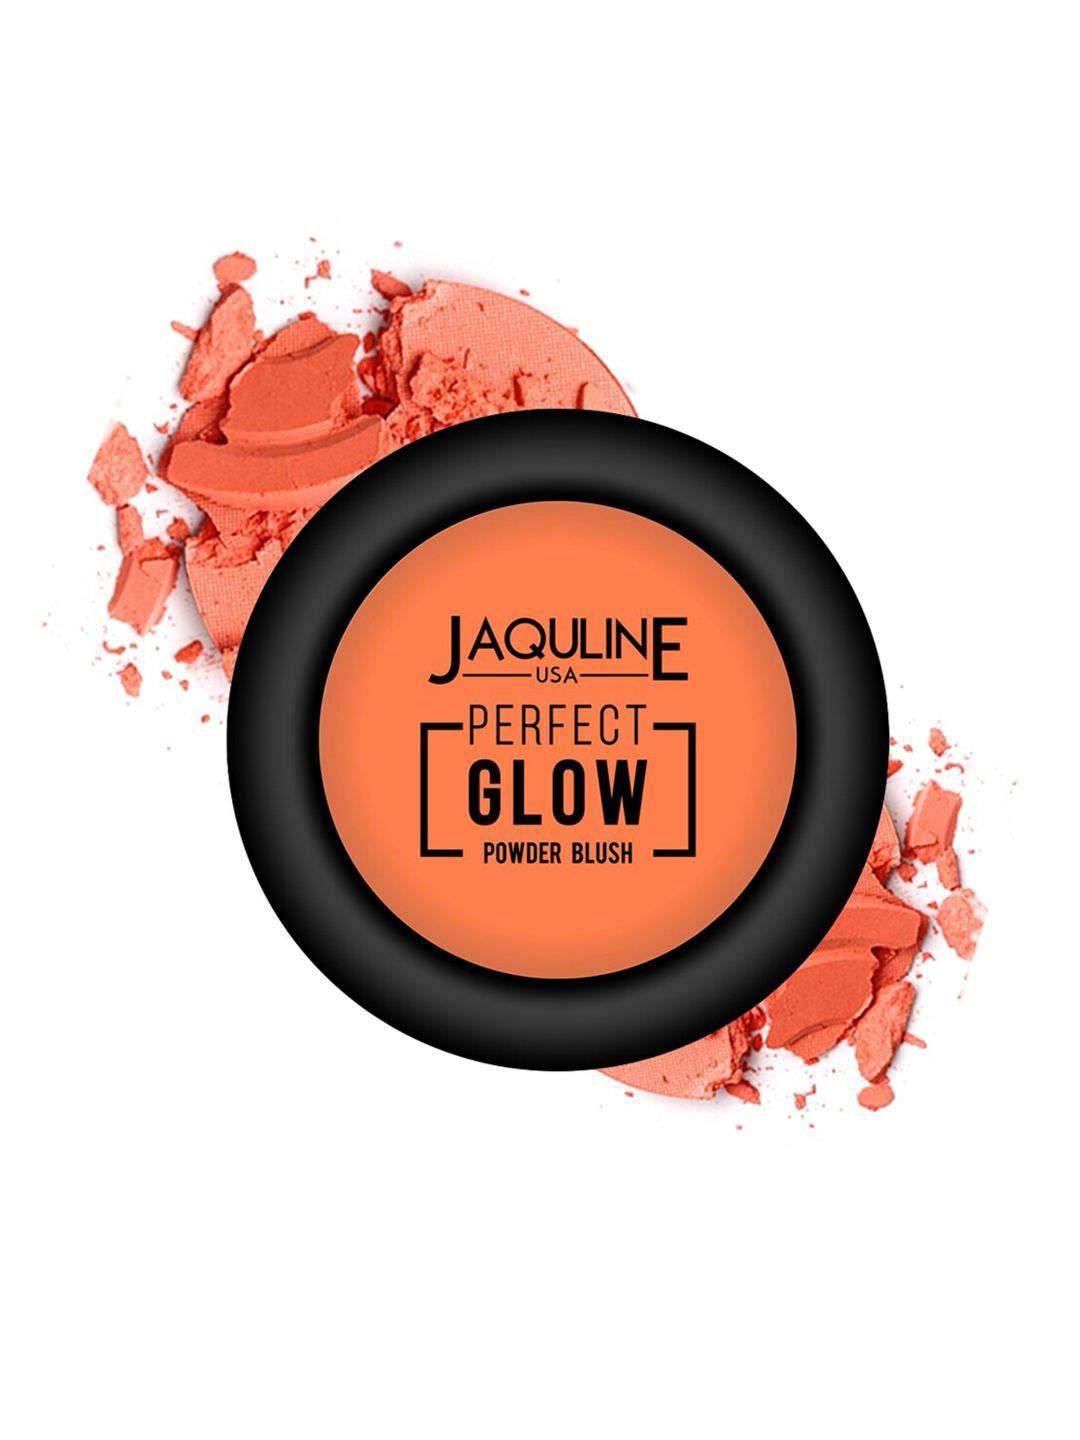 jaquline usa perfect glow powder blush - 02 call me blush